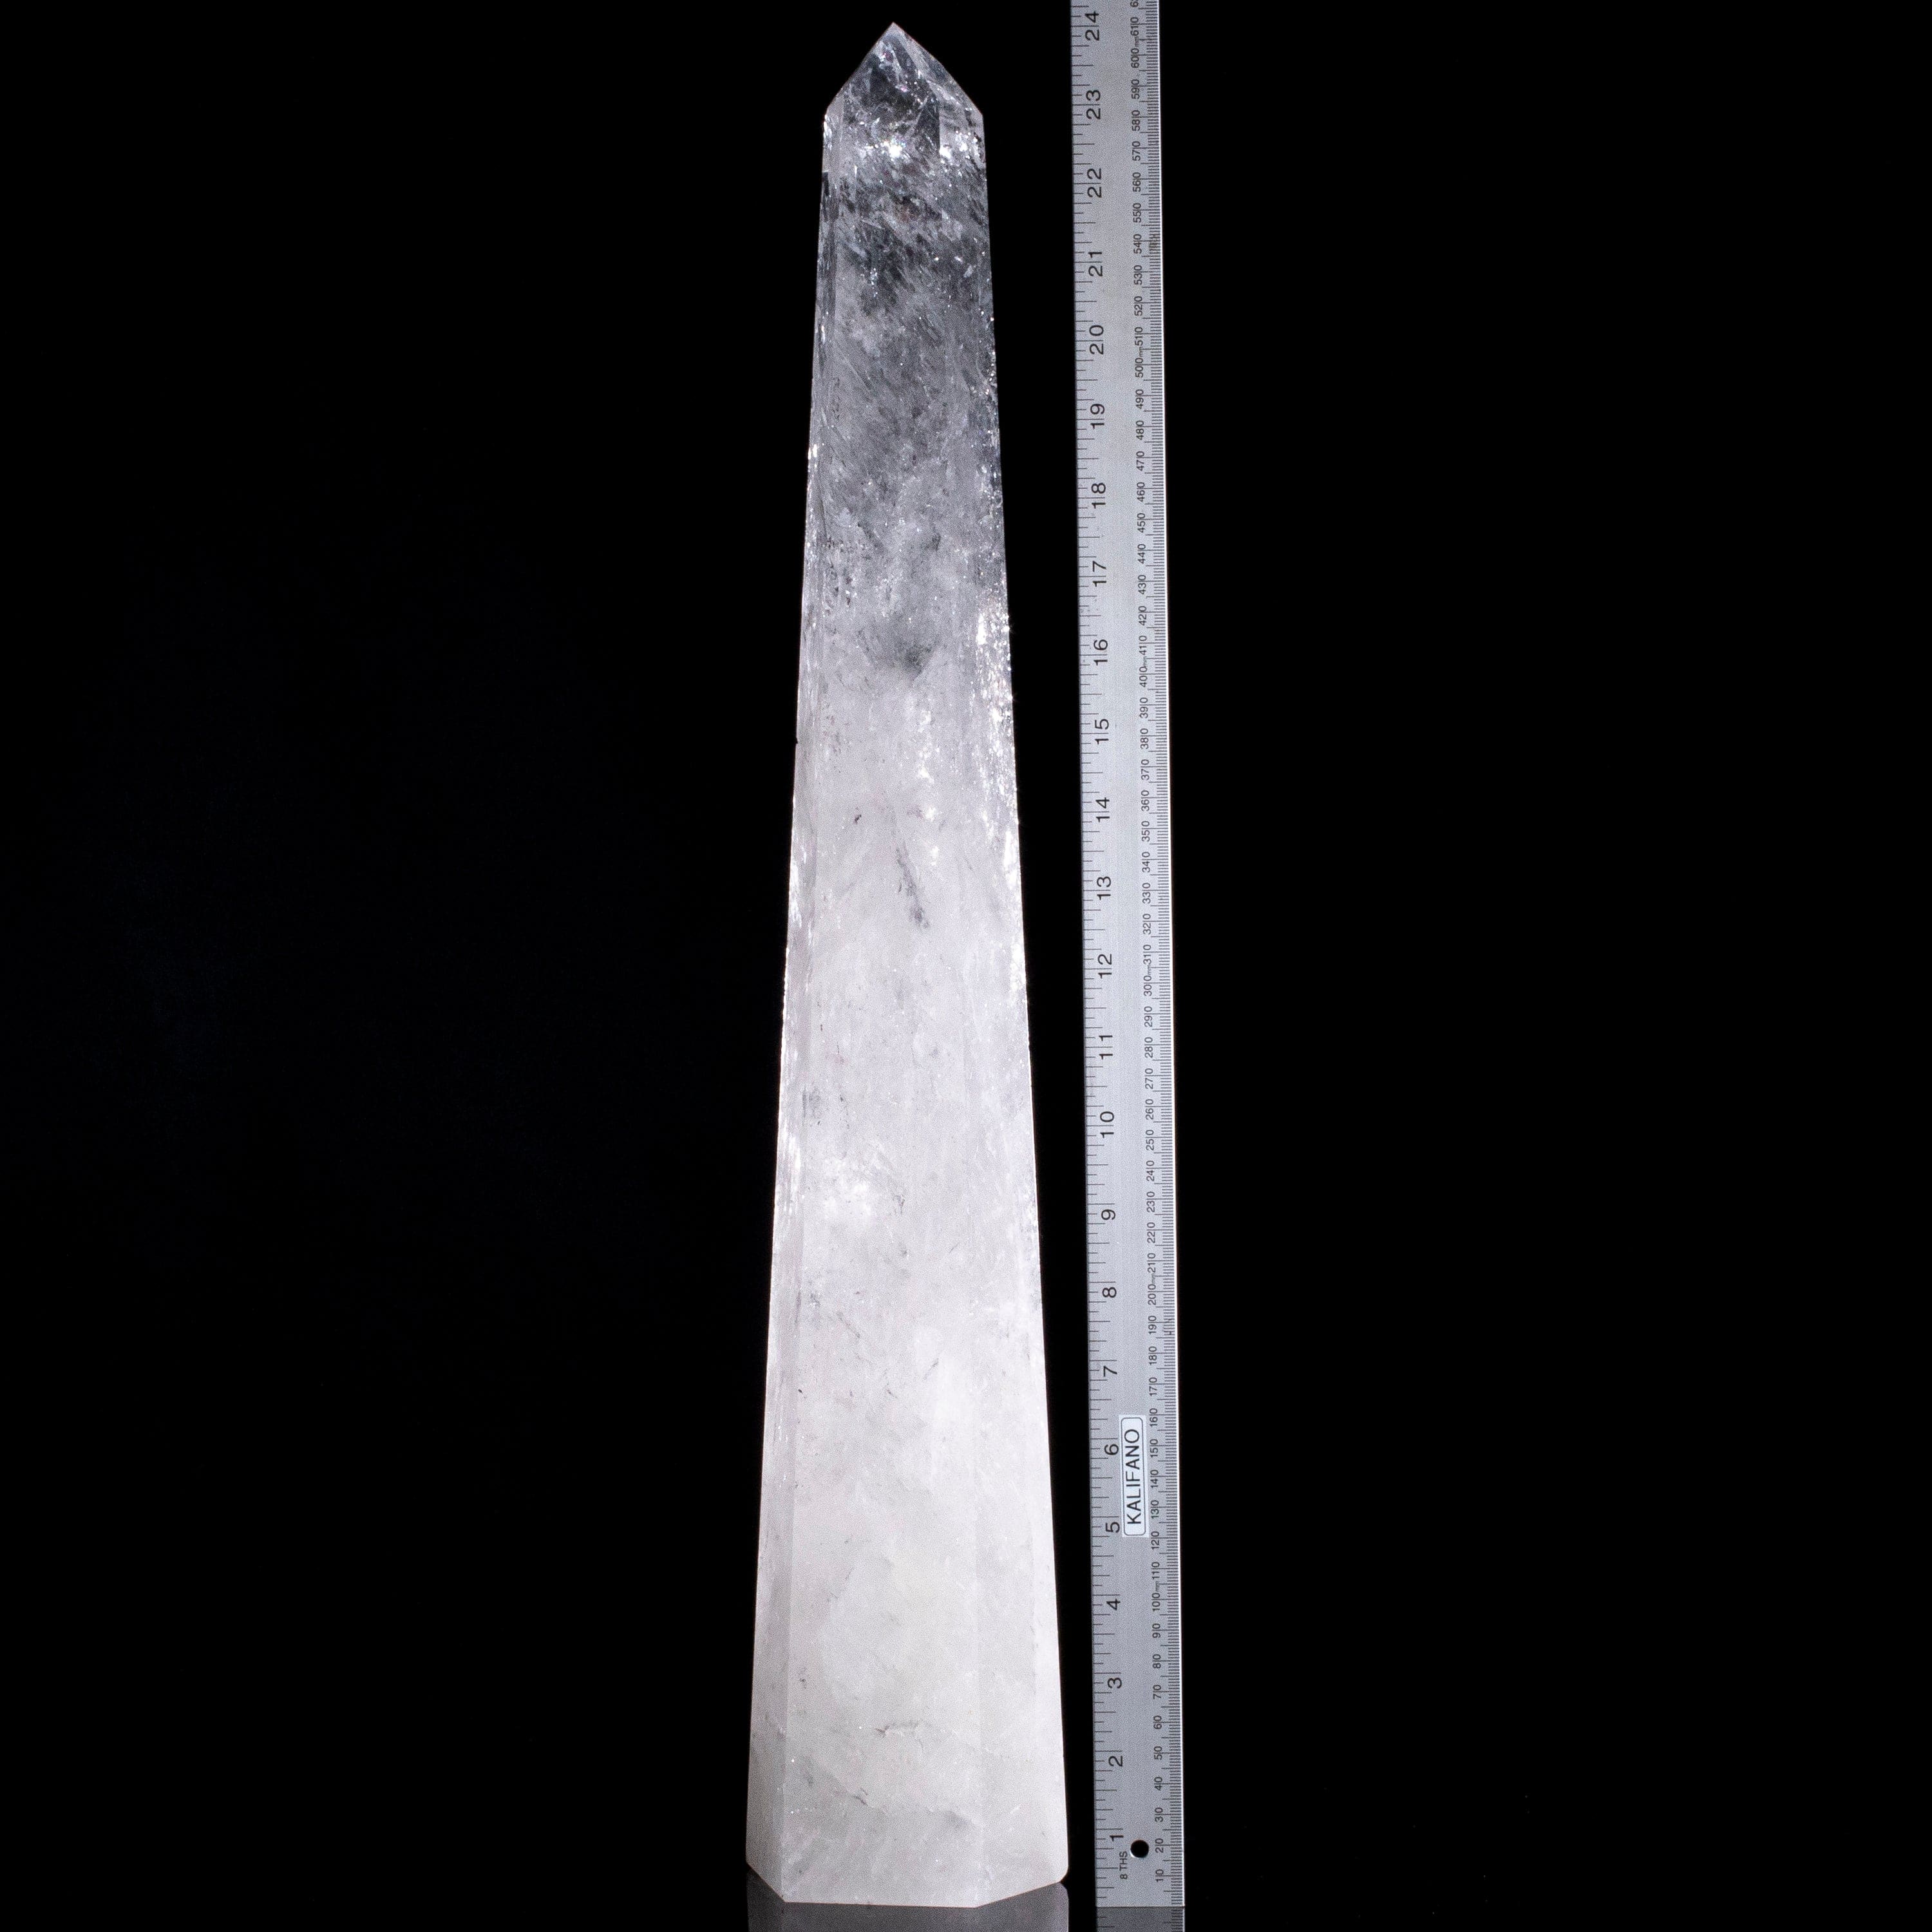 Kalifano Quartz Natural Quartz Obelisk from Brazil - 24.5" / 16 lbs QZ9000.001